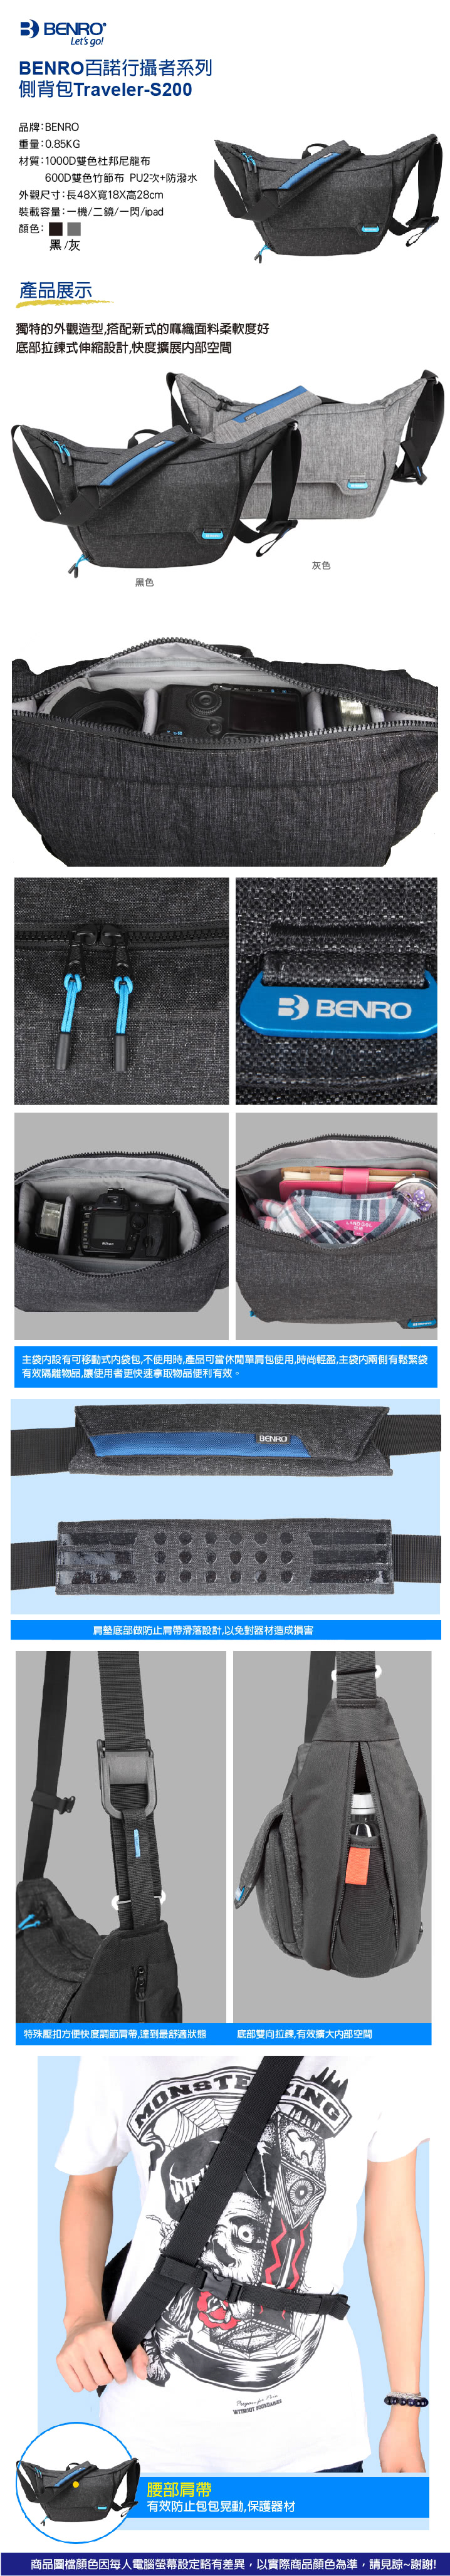 【BENRO百諾】Traveler-S200行攝者系列側背包(勝興公司貨)